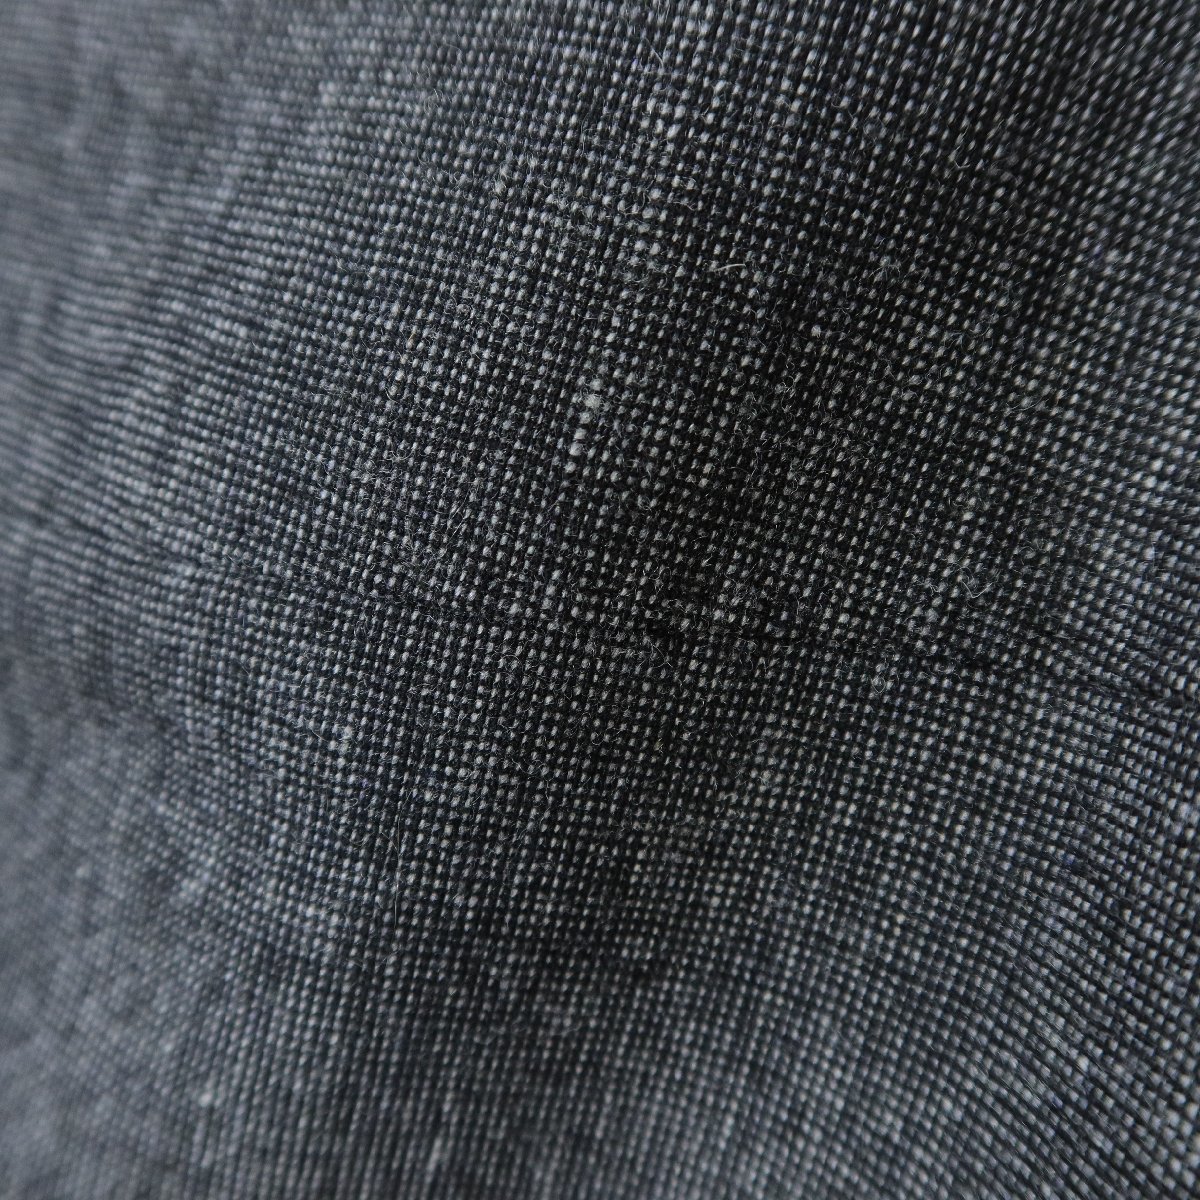 キース★スーツ テーラードジャケット&スカート 大きいサイズ42 ストレッチ素材 ウール混 濃いグレー系 z5839_画像6